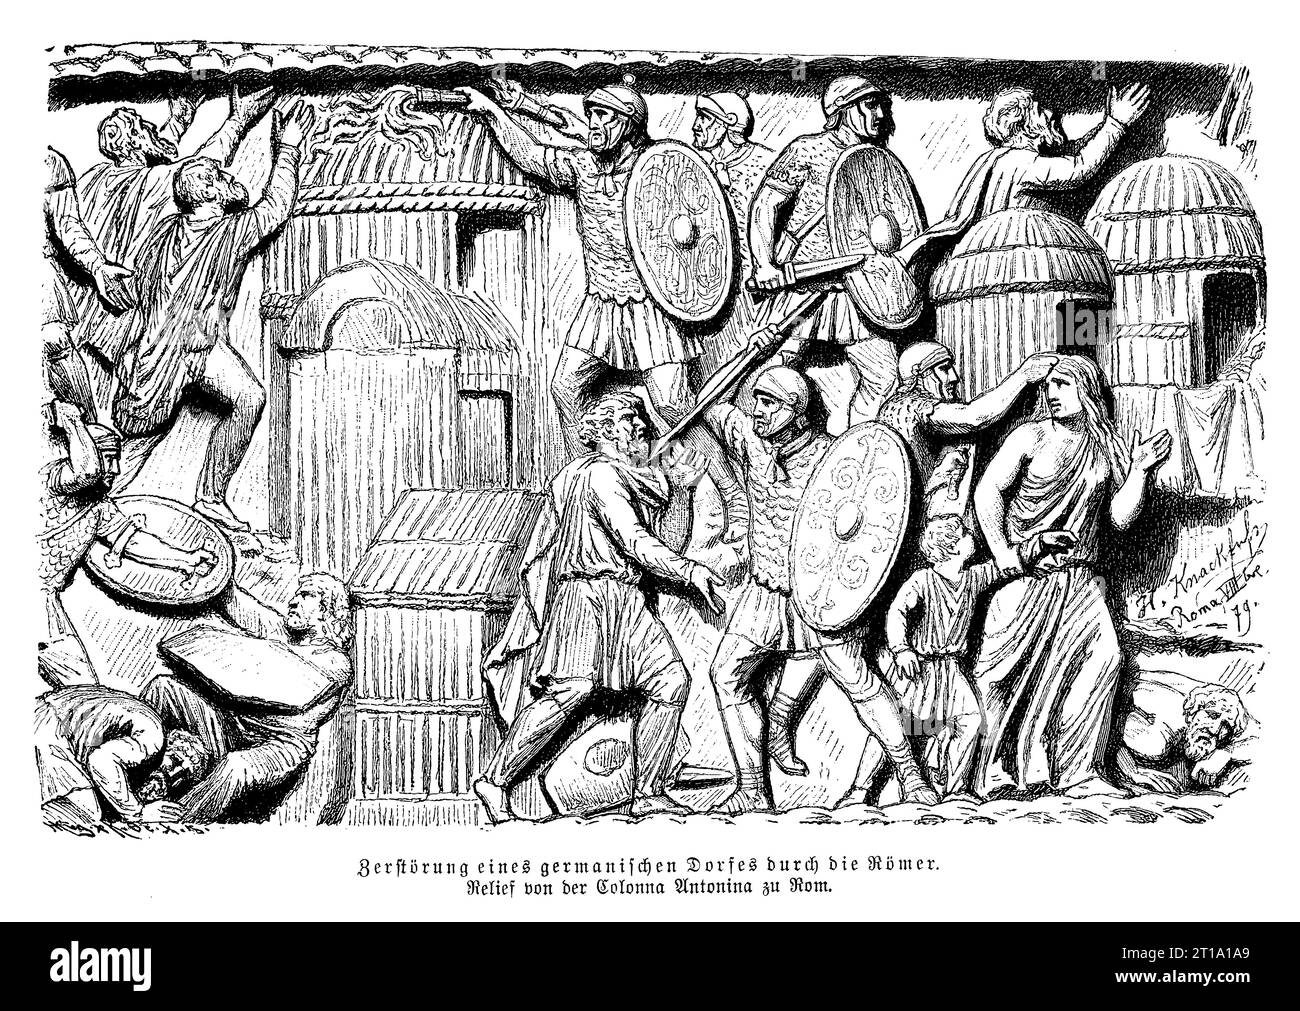 Distruzione del villaggio tedesco da parte dell'esercito romano, bassorilievo sulla colonna Antonina a Roma eretto in onore dell'imperatore Marco Aurelio Antonino Foto Stock